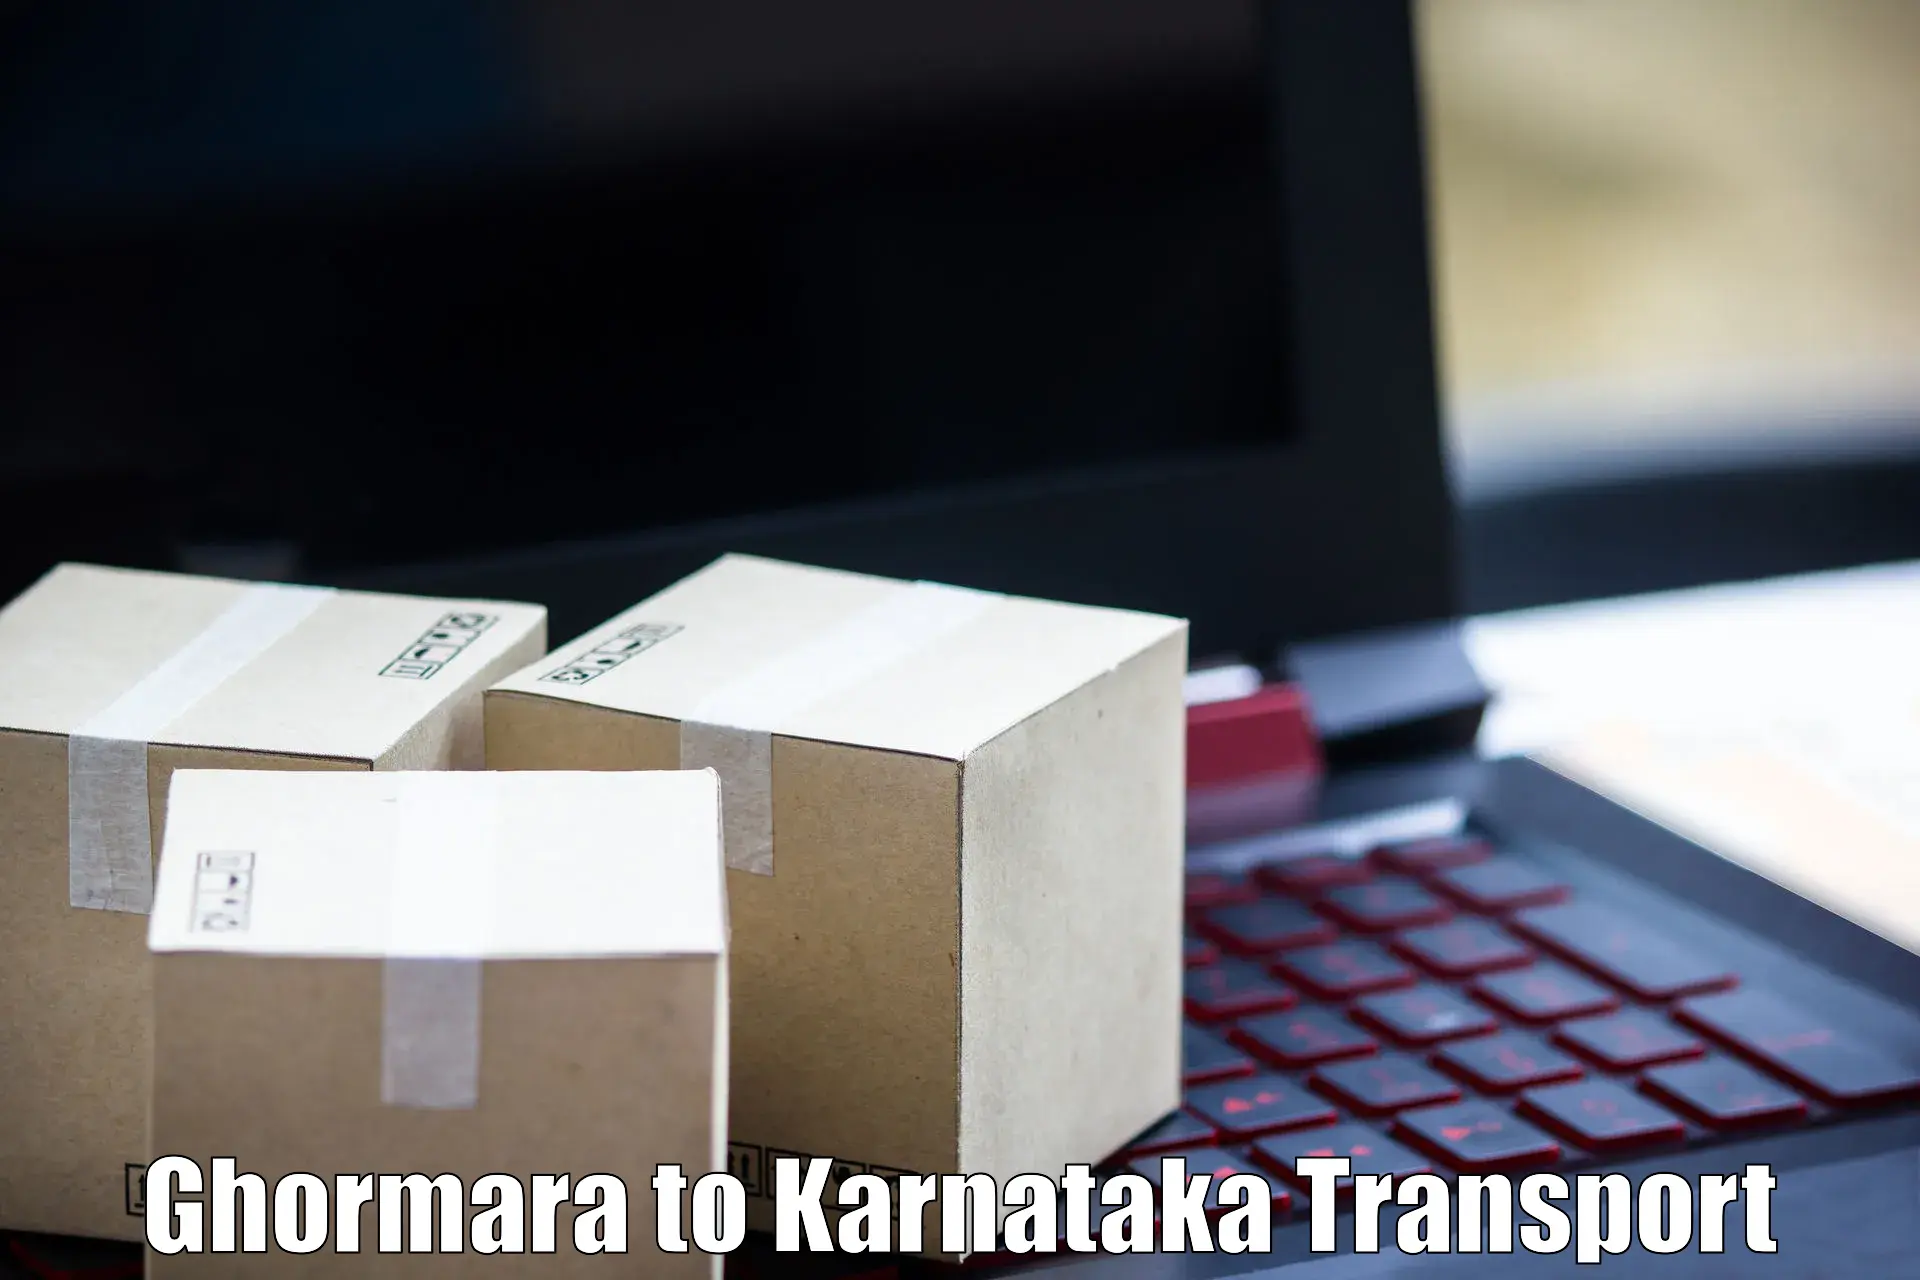 Furniture transport service Ghormara to Karnataka